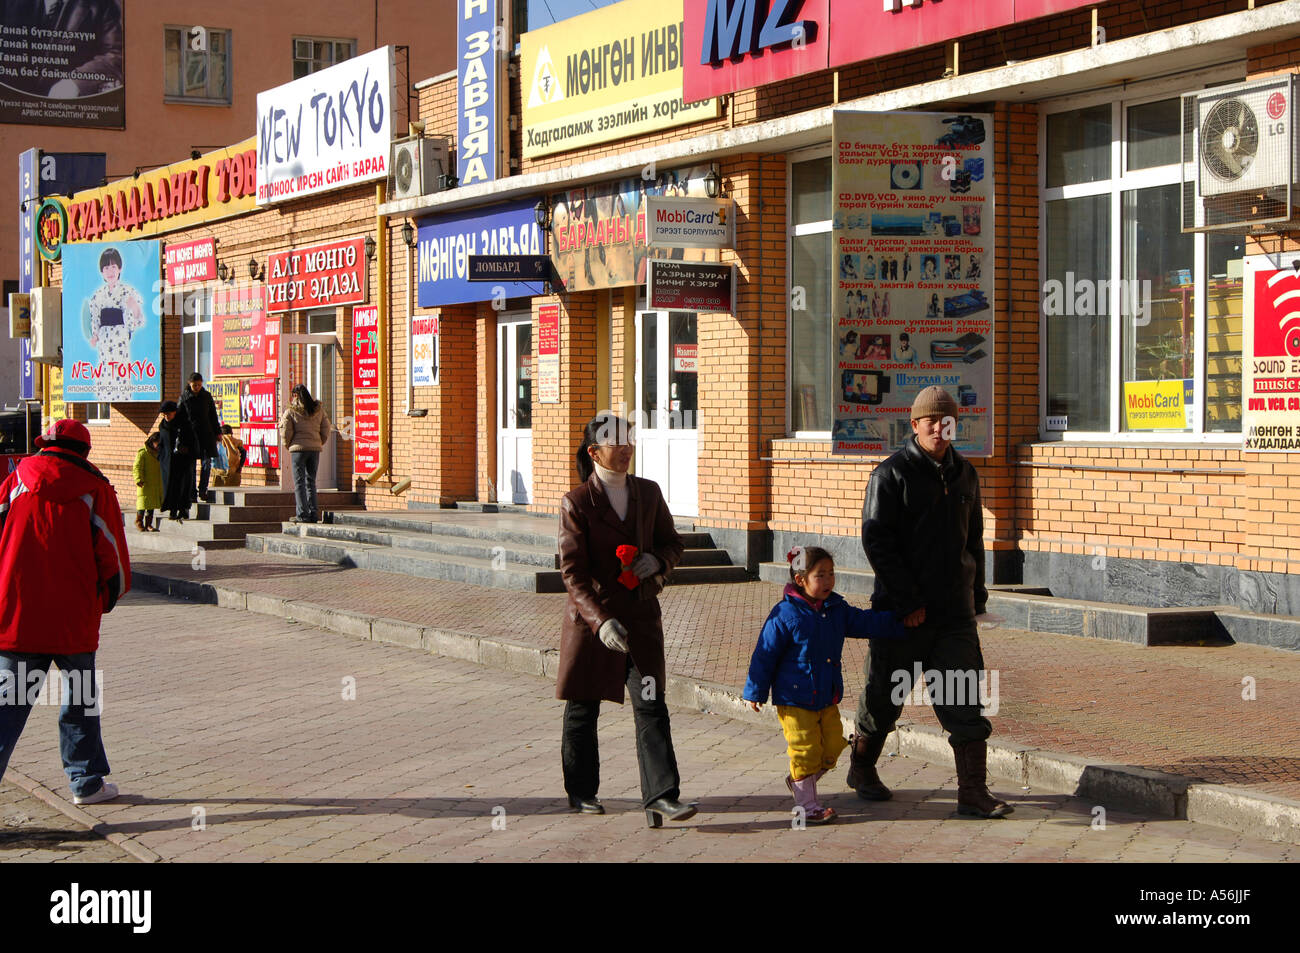 La zone commerçante de l'Avenue de la paix Ulaan-Baatar Mongolie Banque D'Images